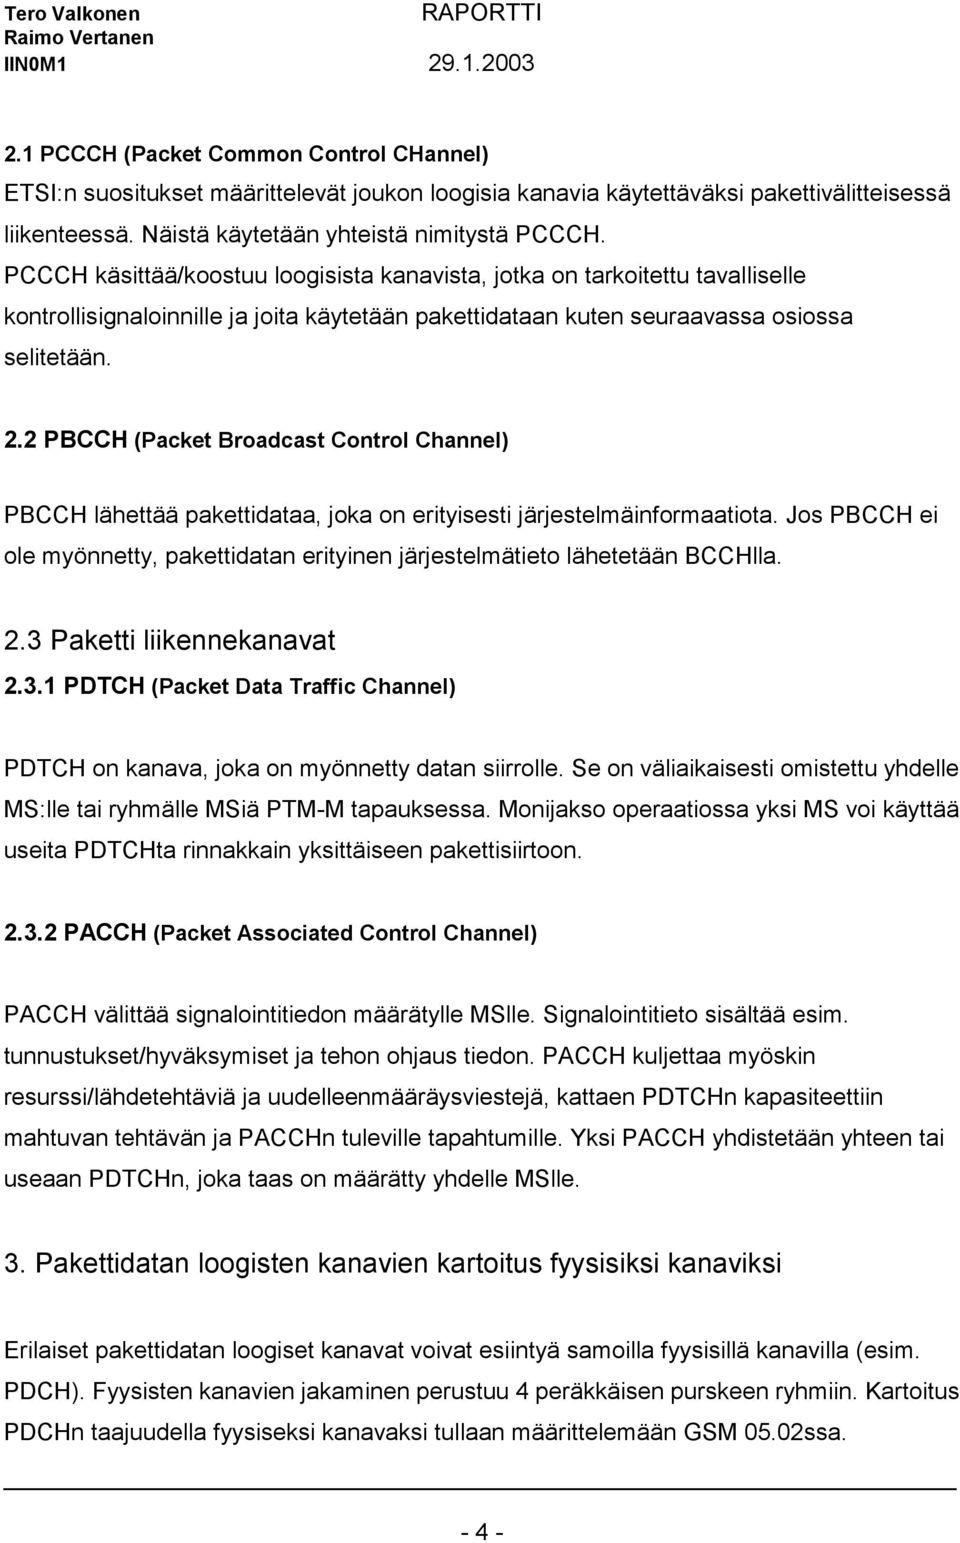 2 PBCCH (Packet Broadcast Control Channel) PBCCH lähettää pakettidataa, joka on erityisesti järjestelmäinformaatiota.